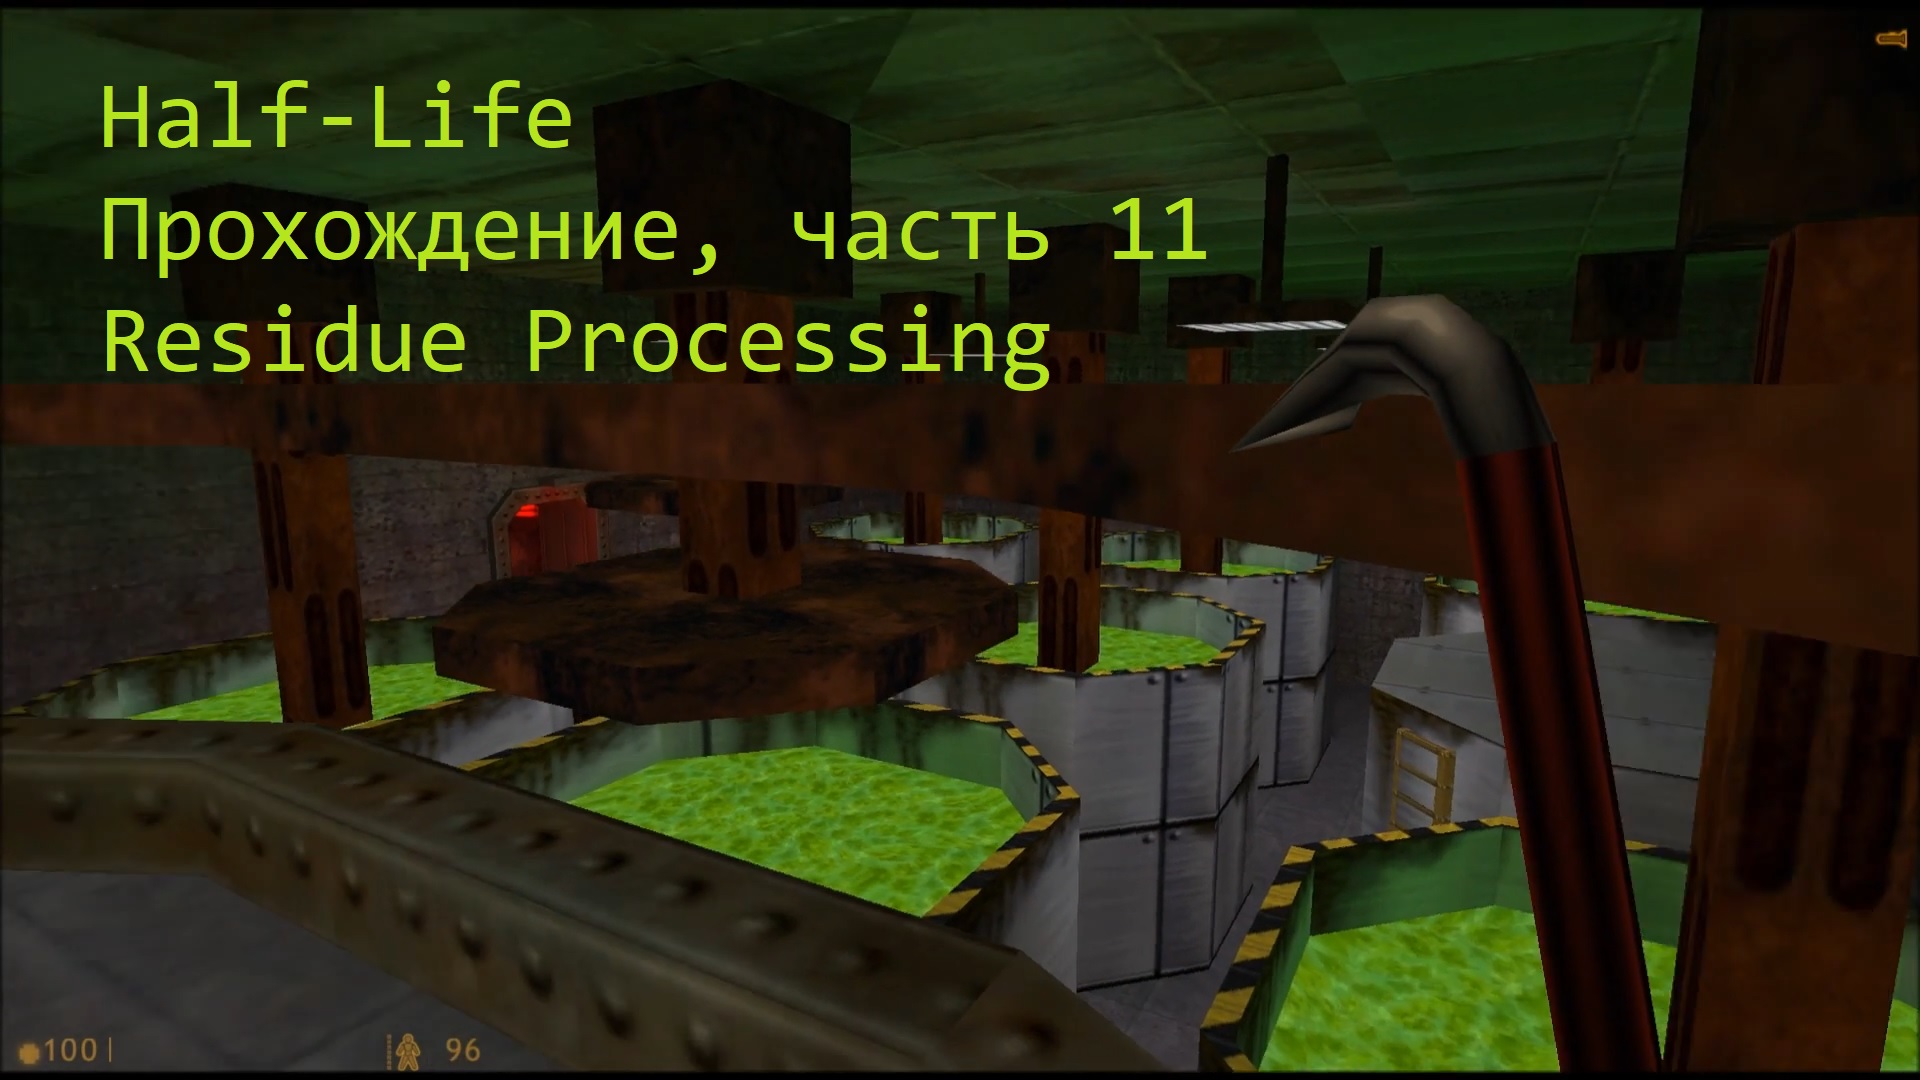 Half-Life, Прохождение, часть 11 - Residue Processing